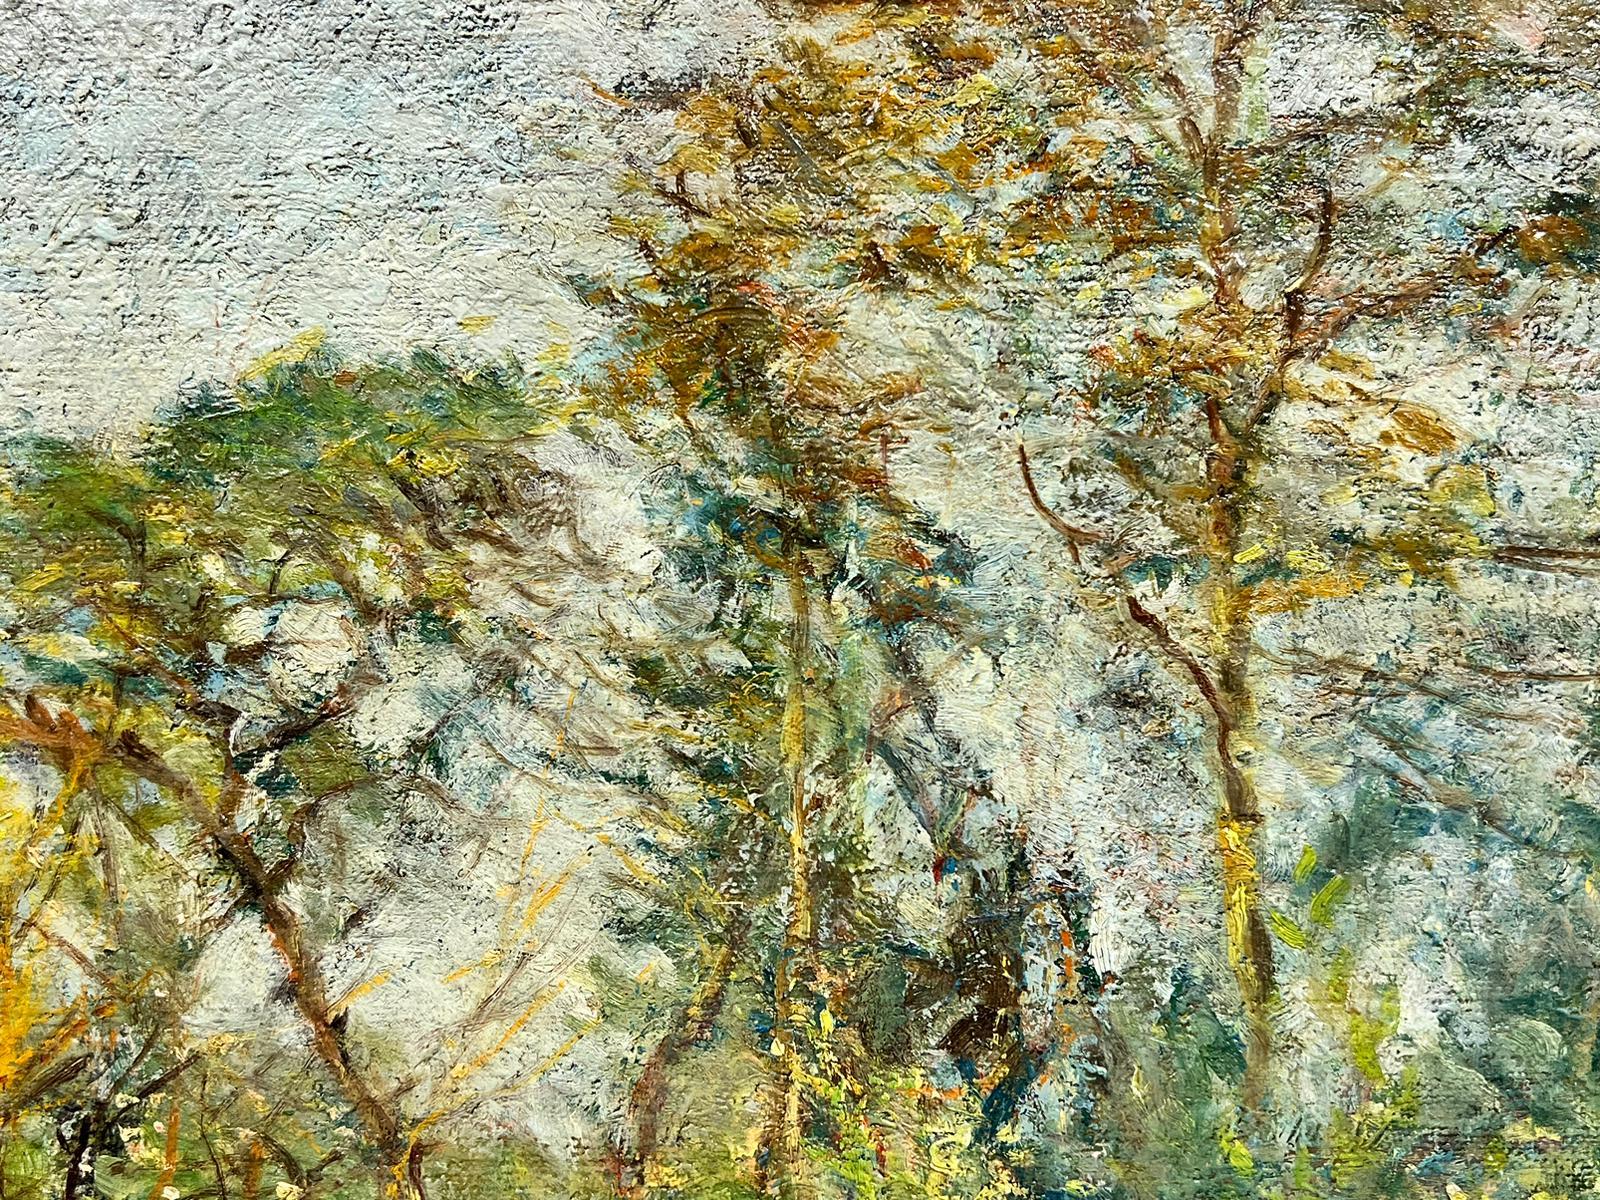 Woodland Meadows
par Henri Dreyfus-Lemaître (1878 - 1947), signé en bas à droite. 

Henri Dreyfus-Lemaître (1878 - 1947) est un artiste français, né à Amiens, associé au mouvement post-impressionniste. Son Studio à Frépillon, en bordure